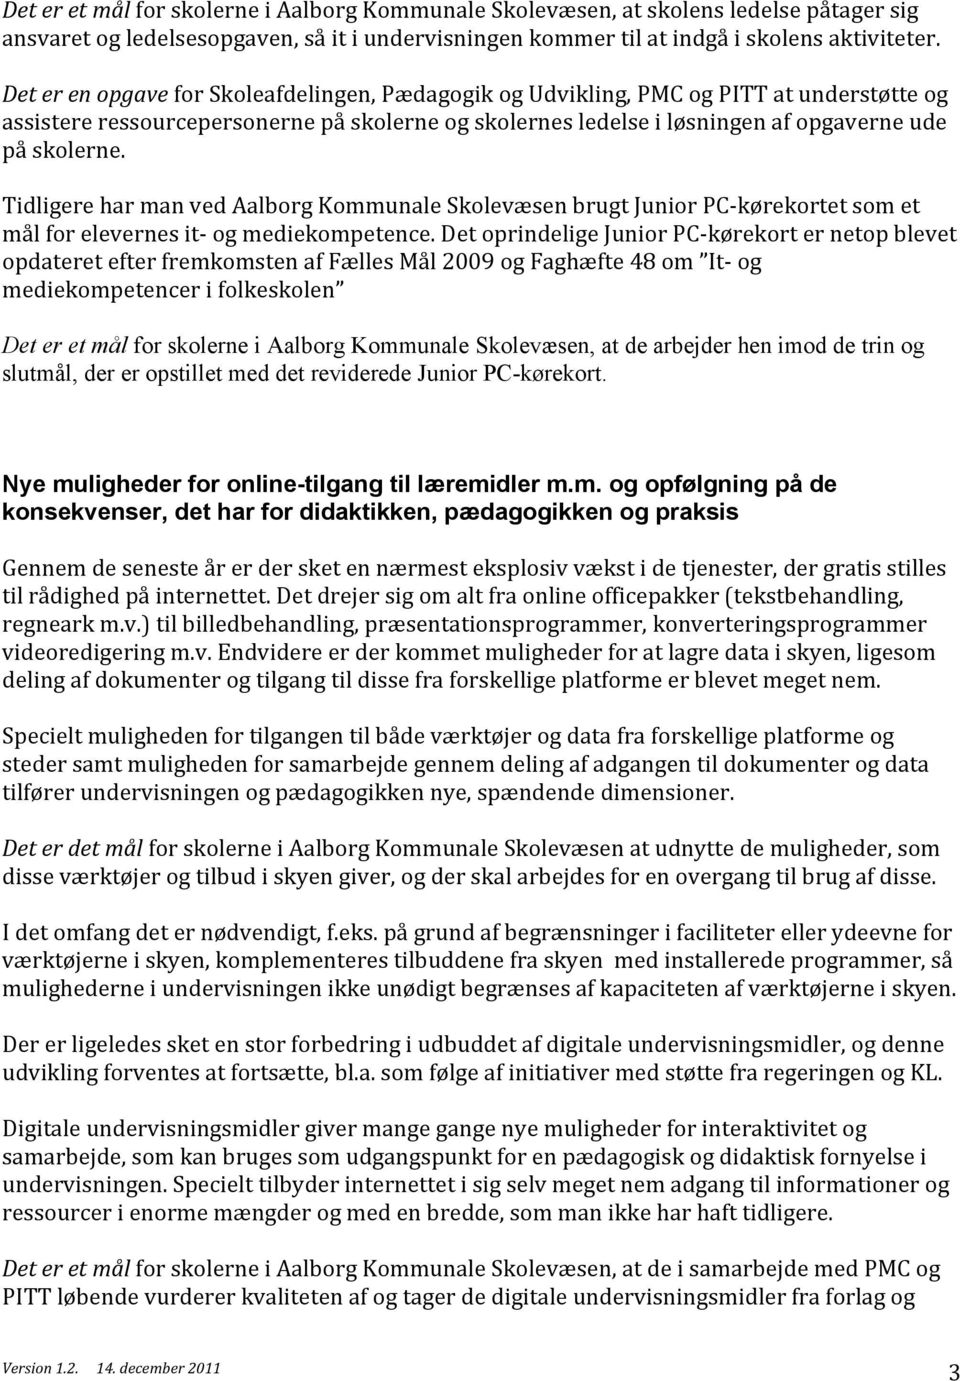 Tidligere har man ved Aalborg Kommunale Skolevæsen brugt Junior PC- kørekortet som et mål for elevernes it- og mediekompetence.